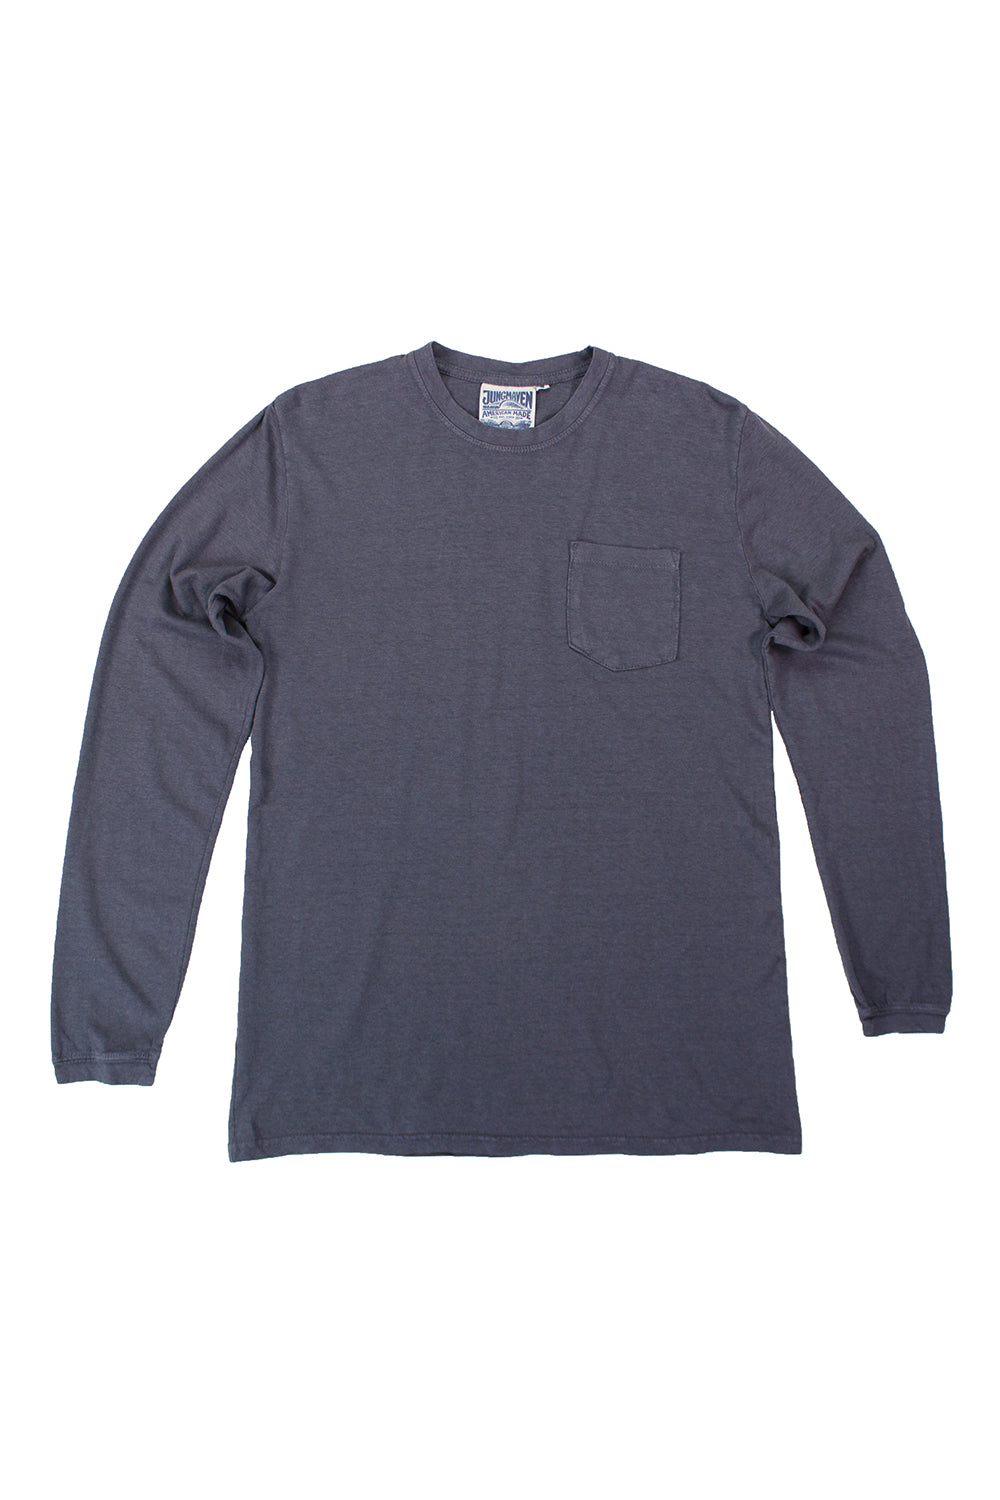 Baja Long Sleeve Pocket Tee | Jungmaven Hemp Clothing & Accessories / Color: Diesel Gray